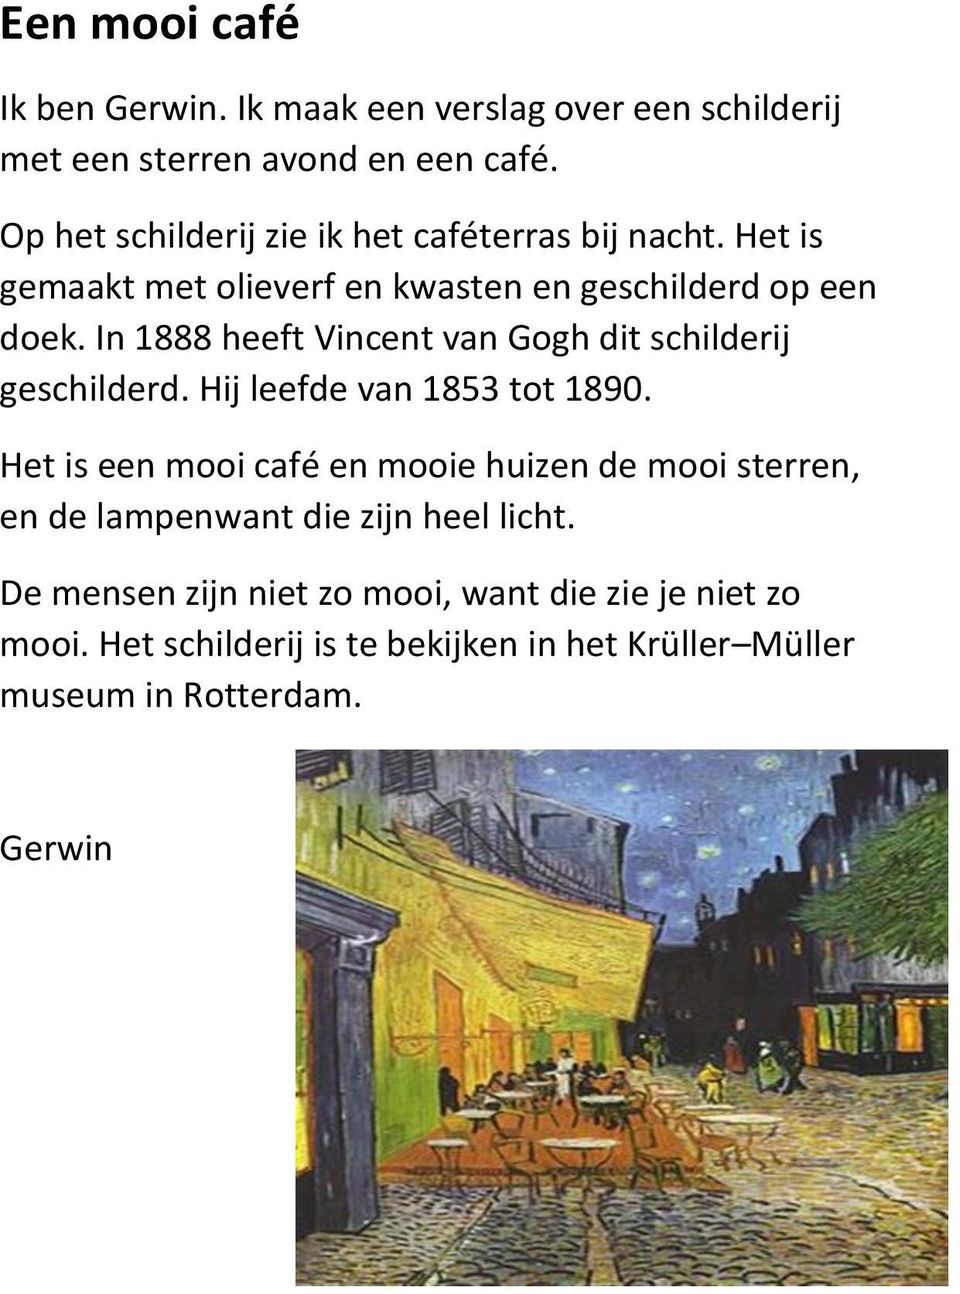 In 1888 heeft Vincent van Gogh dit schilderij geschilderd. Hij leefde van 1853 tot 1890.